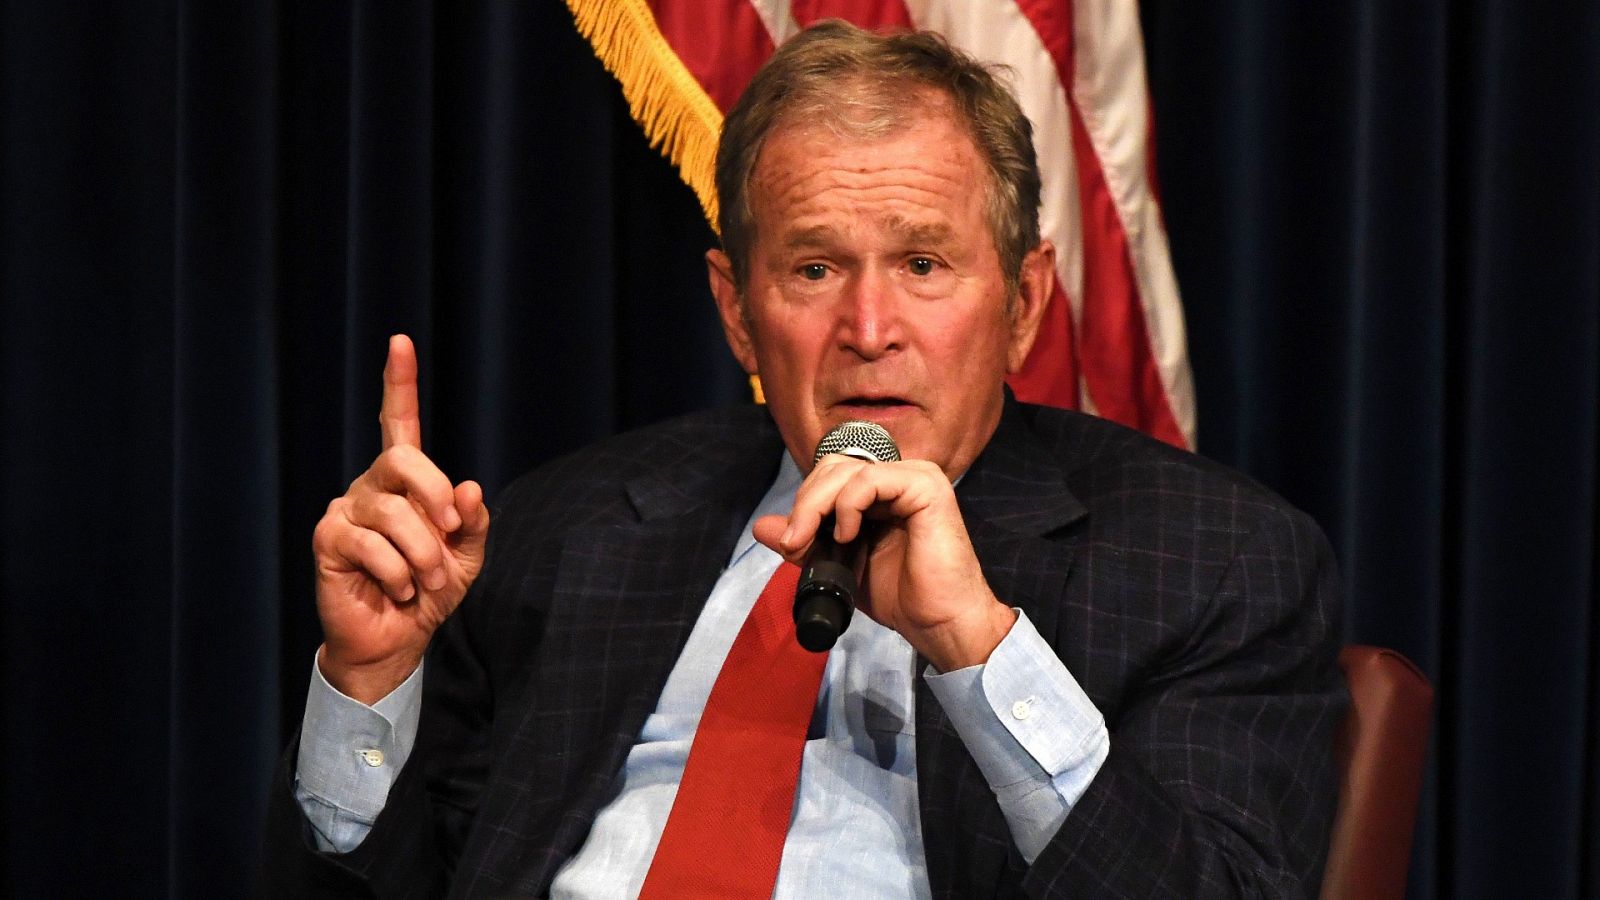 El expresidente republicano Bush felicita a Biden y asegura que el resultado electoral es "claro"